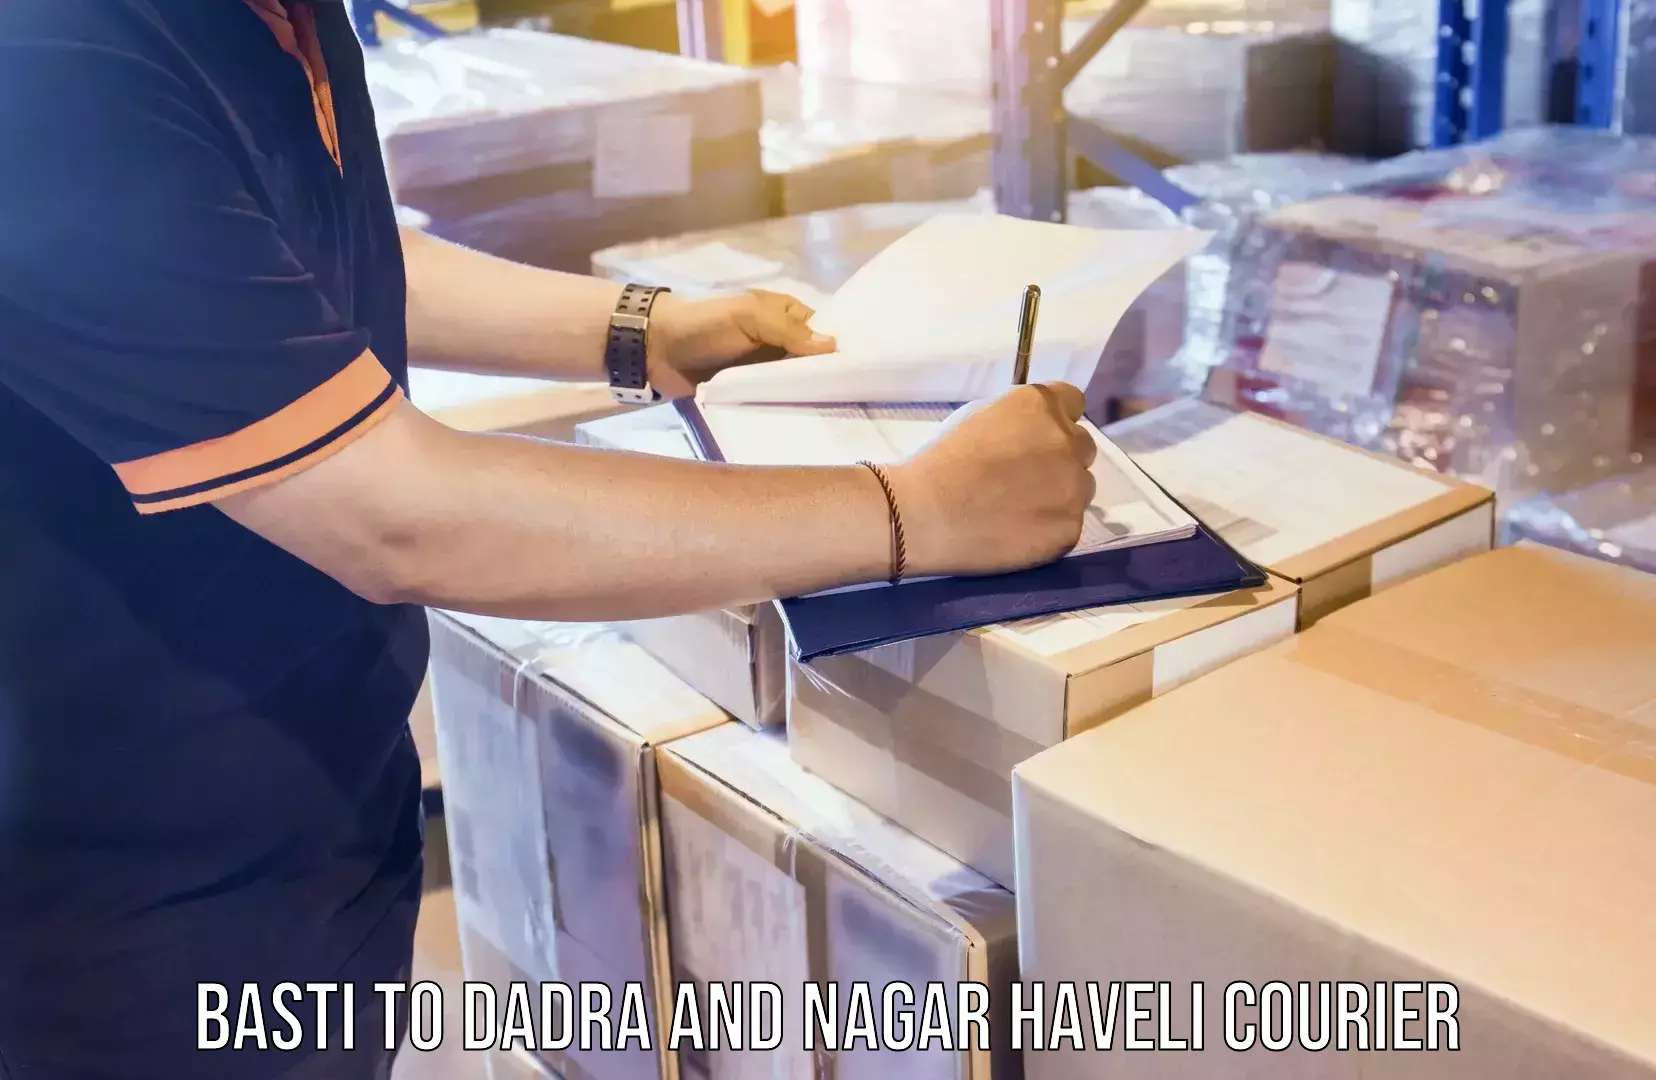 Reliable courier service Basti to Silvassa